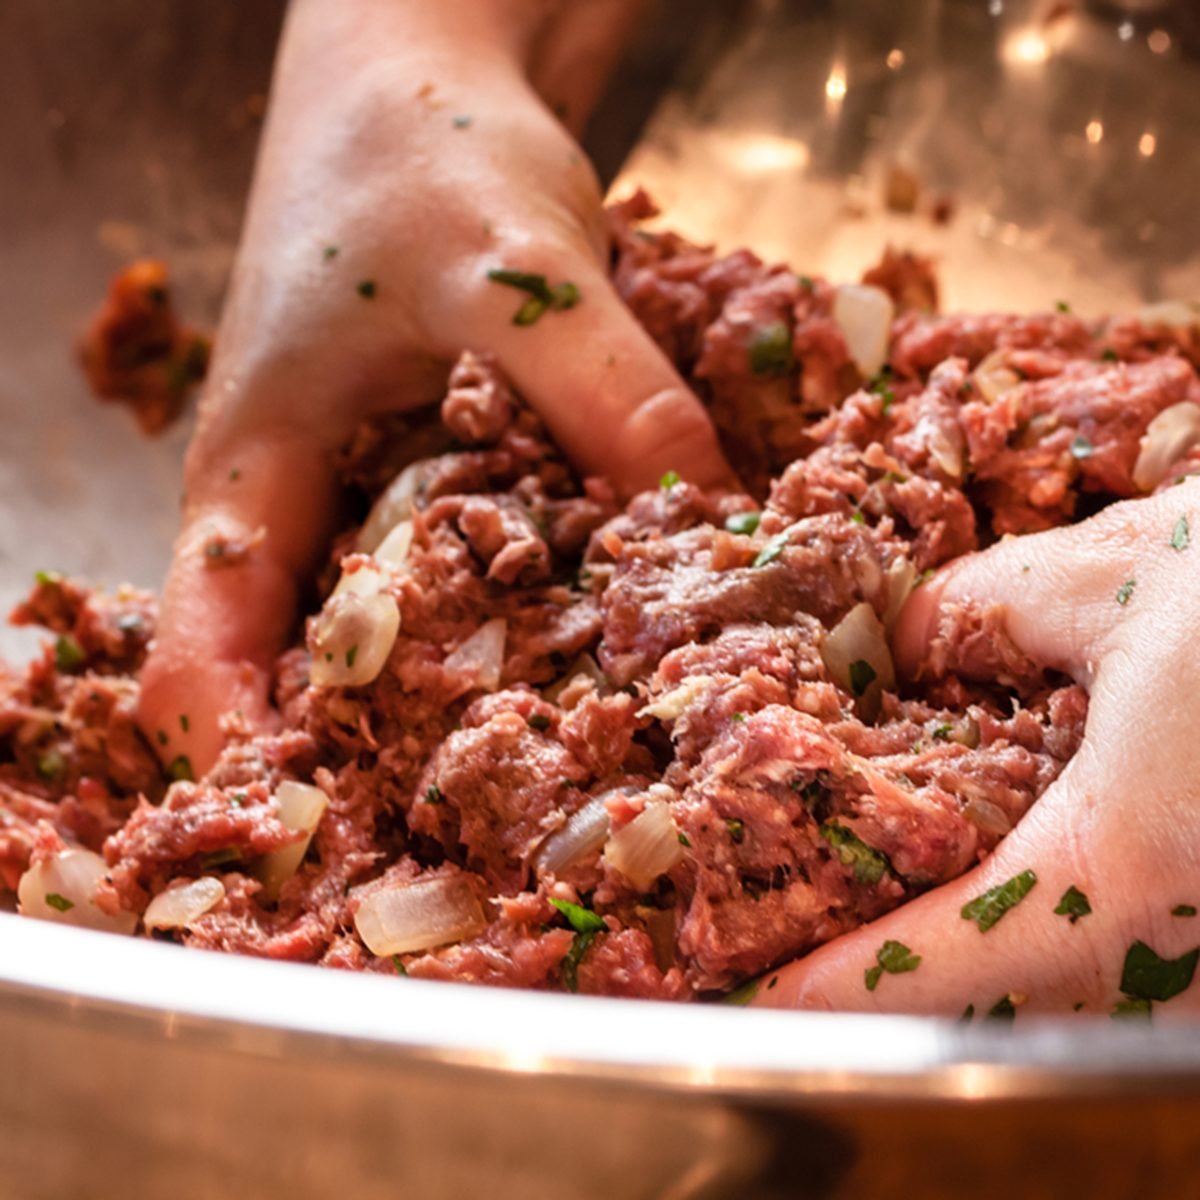 Pair of hand mixing raw ground beef mixture preparing to make fresh gourmet hamburgers